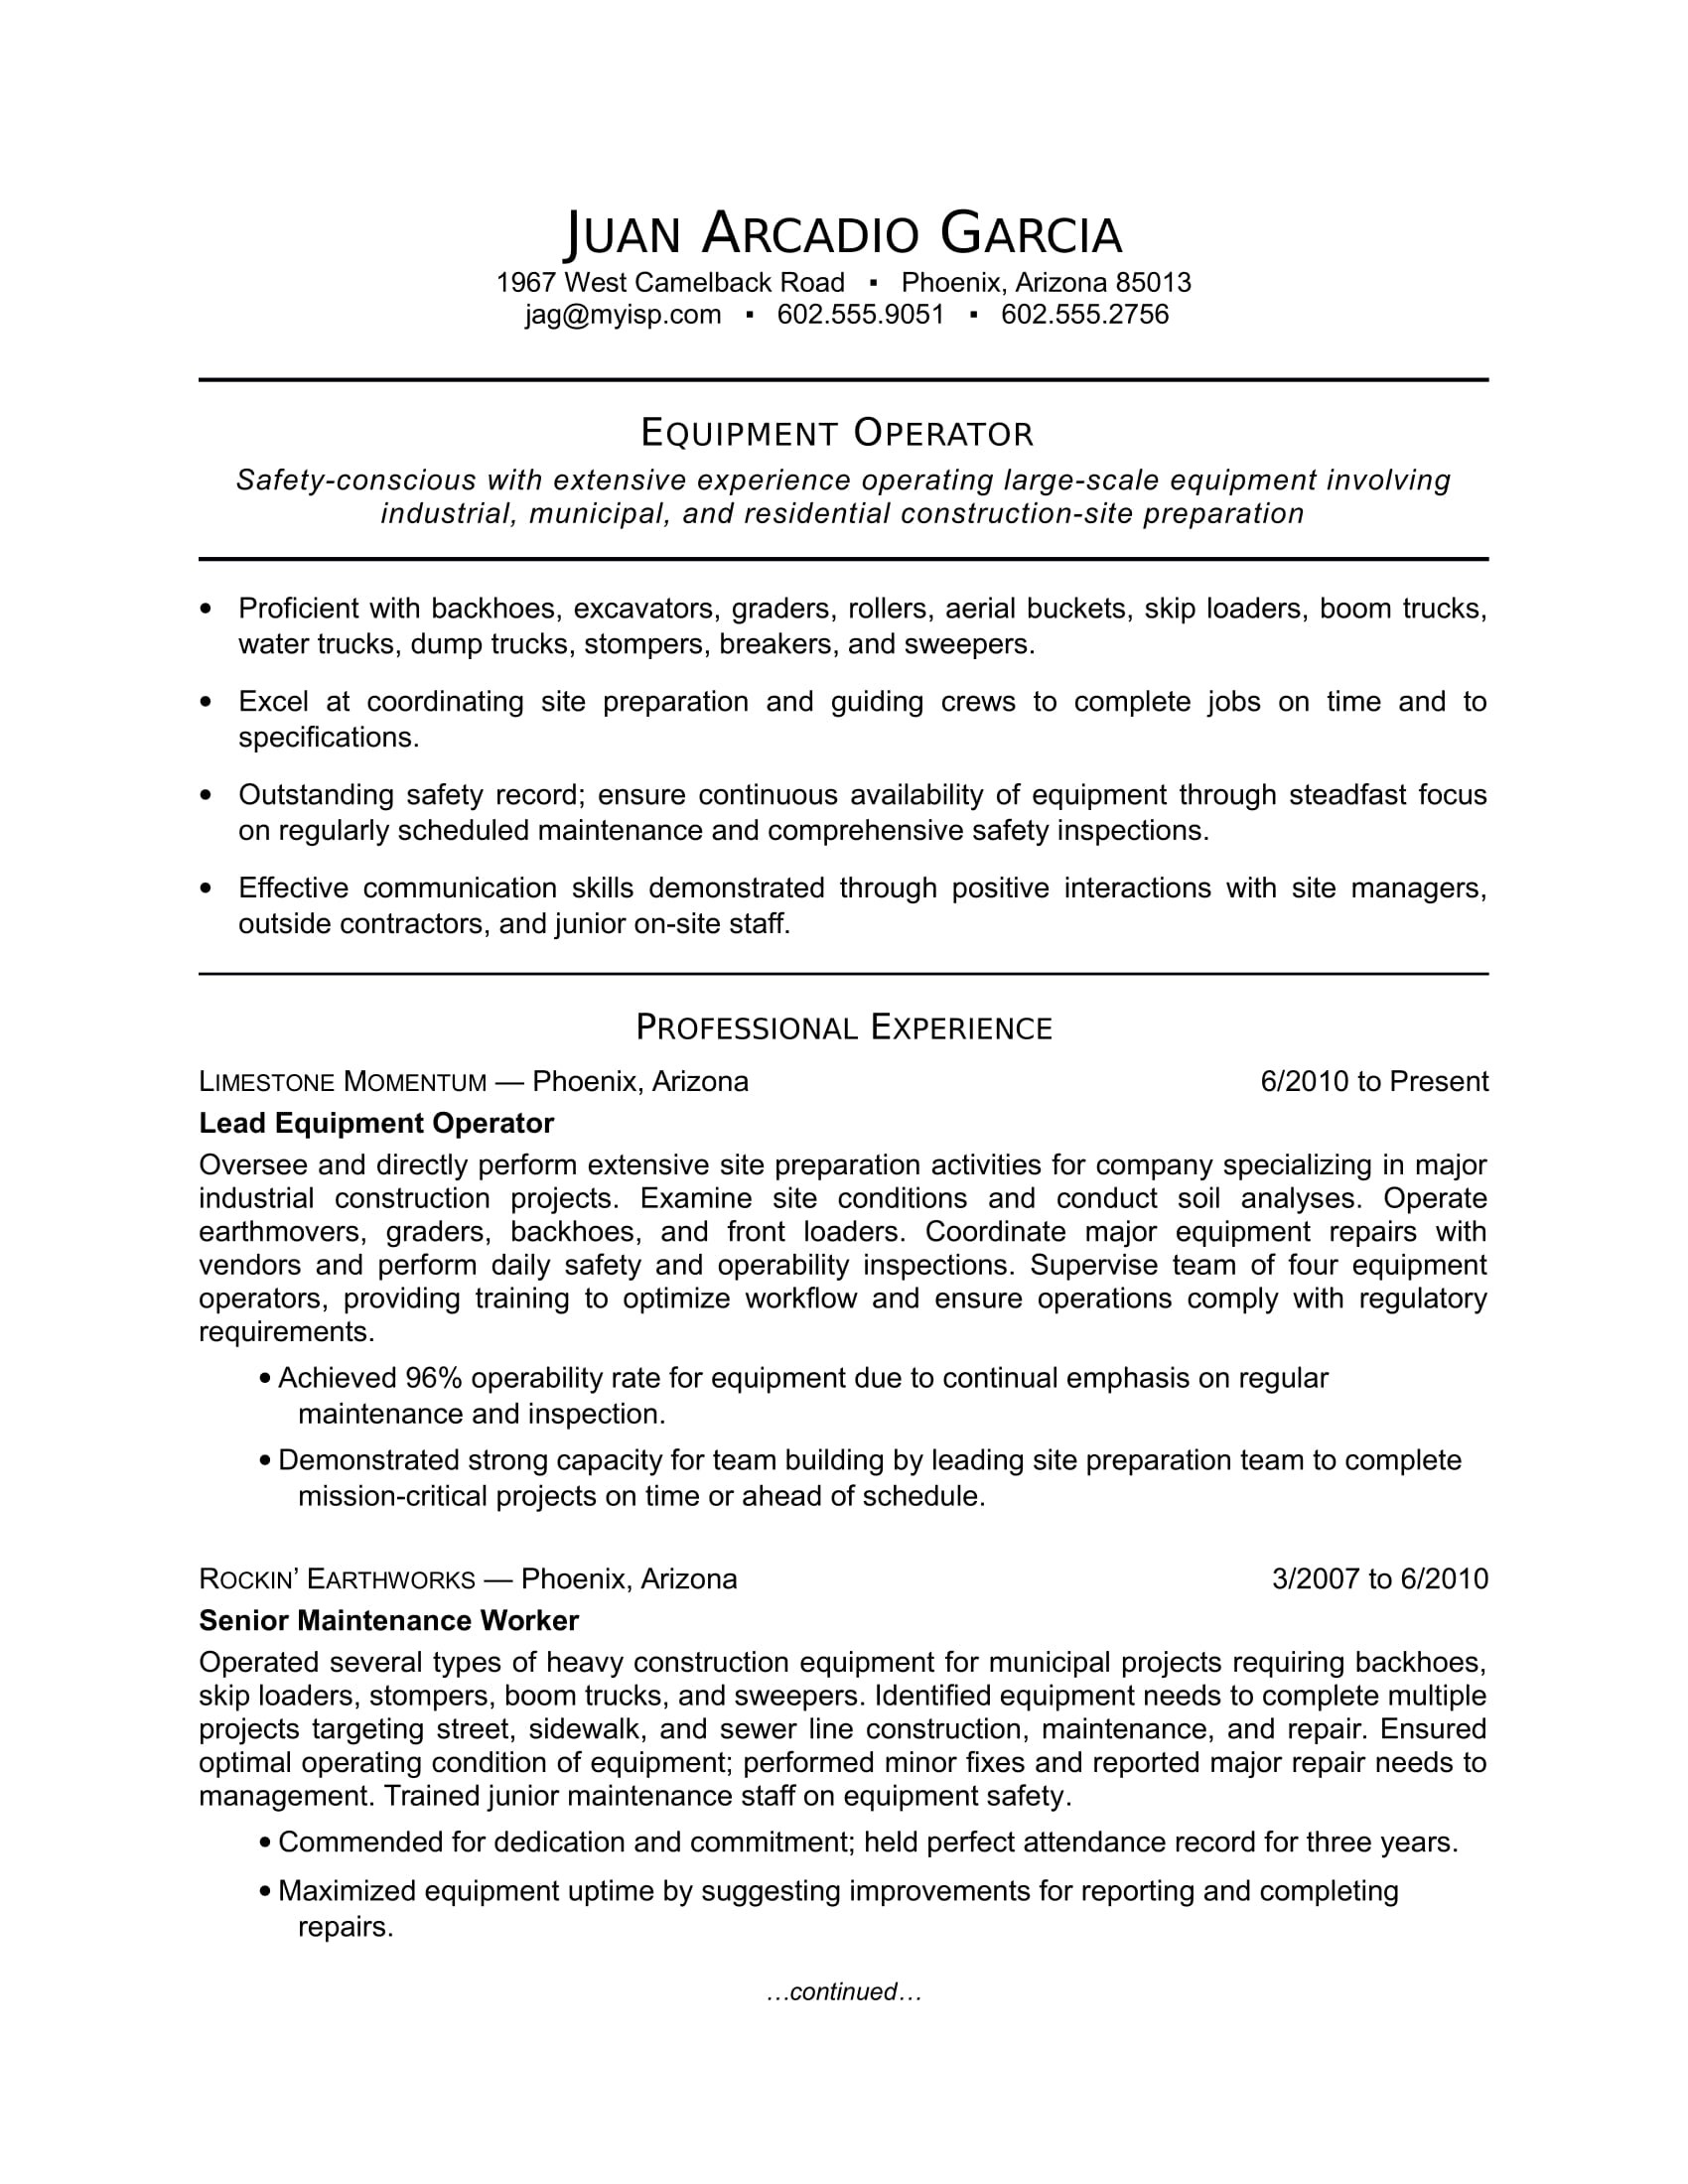 Sample Of Resume for Production Operator Equipment Operator Resume Sample Monster.com